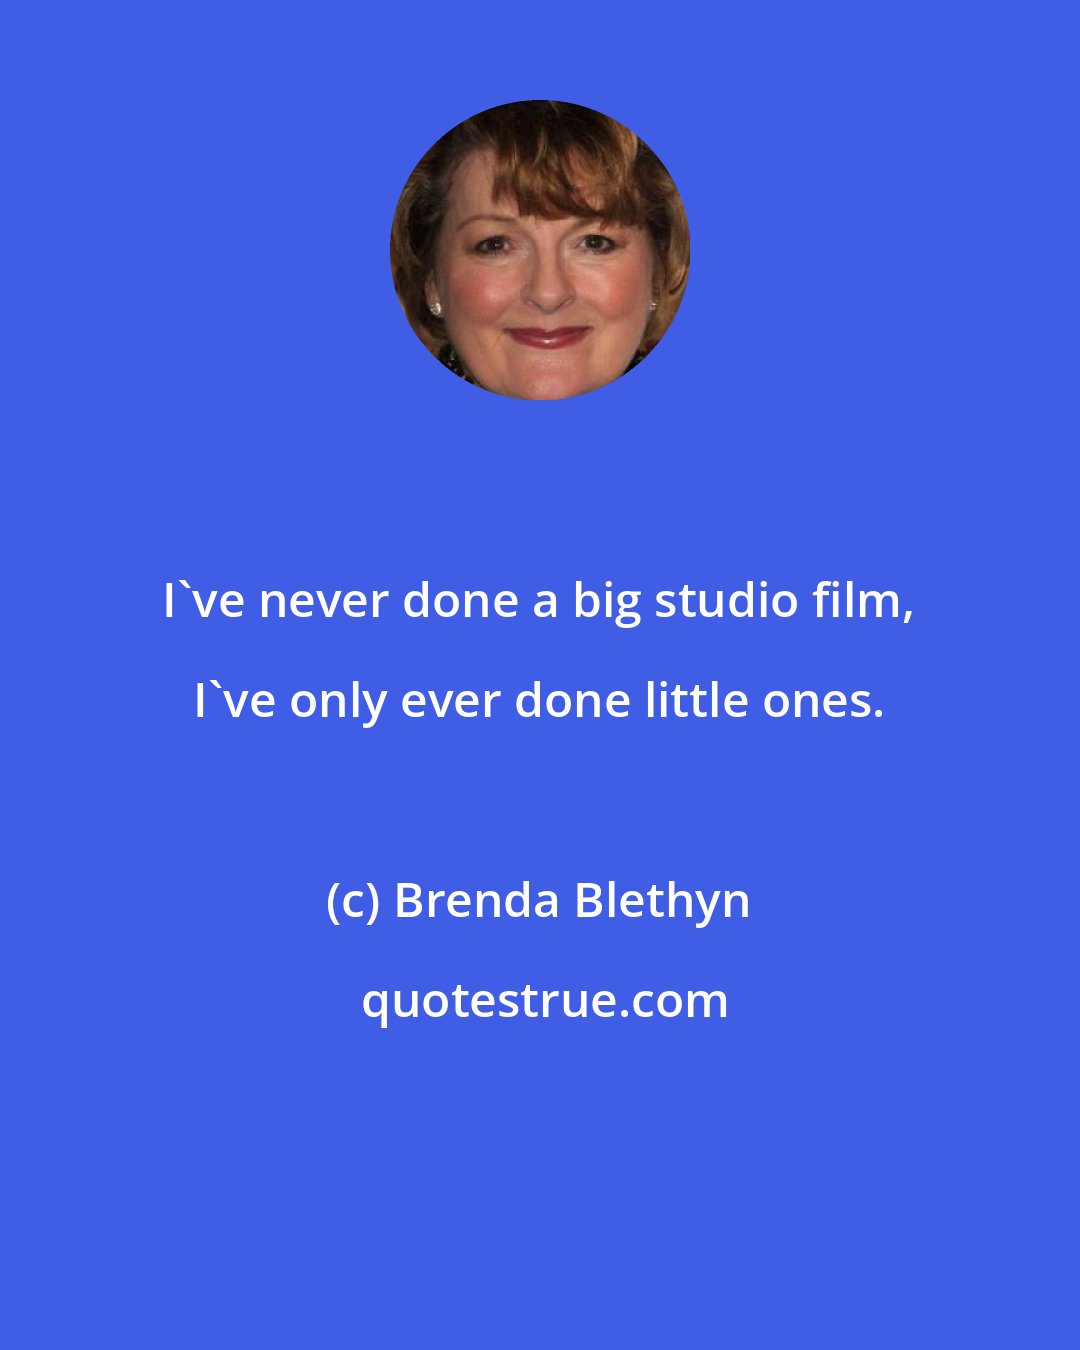 Brenda Blethyn: I've never done a big studio film, I've only ever done little ones.